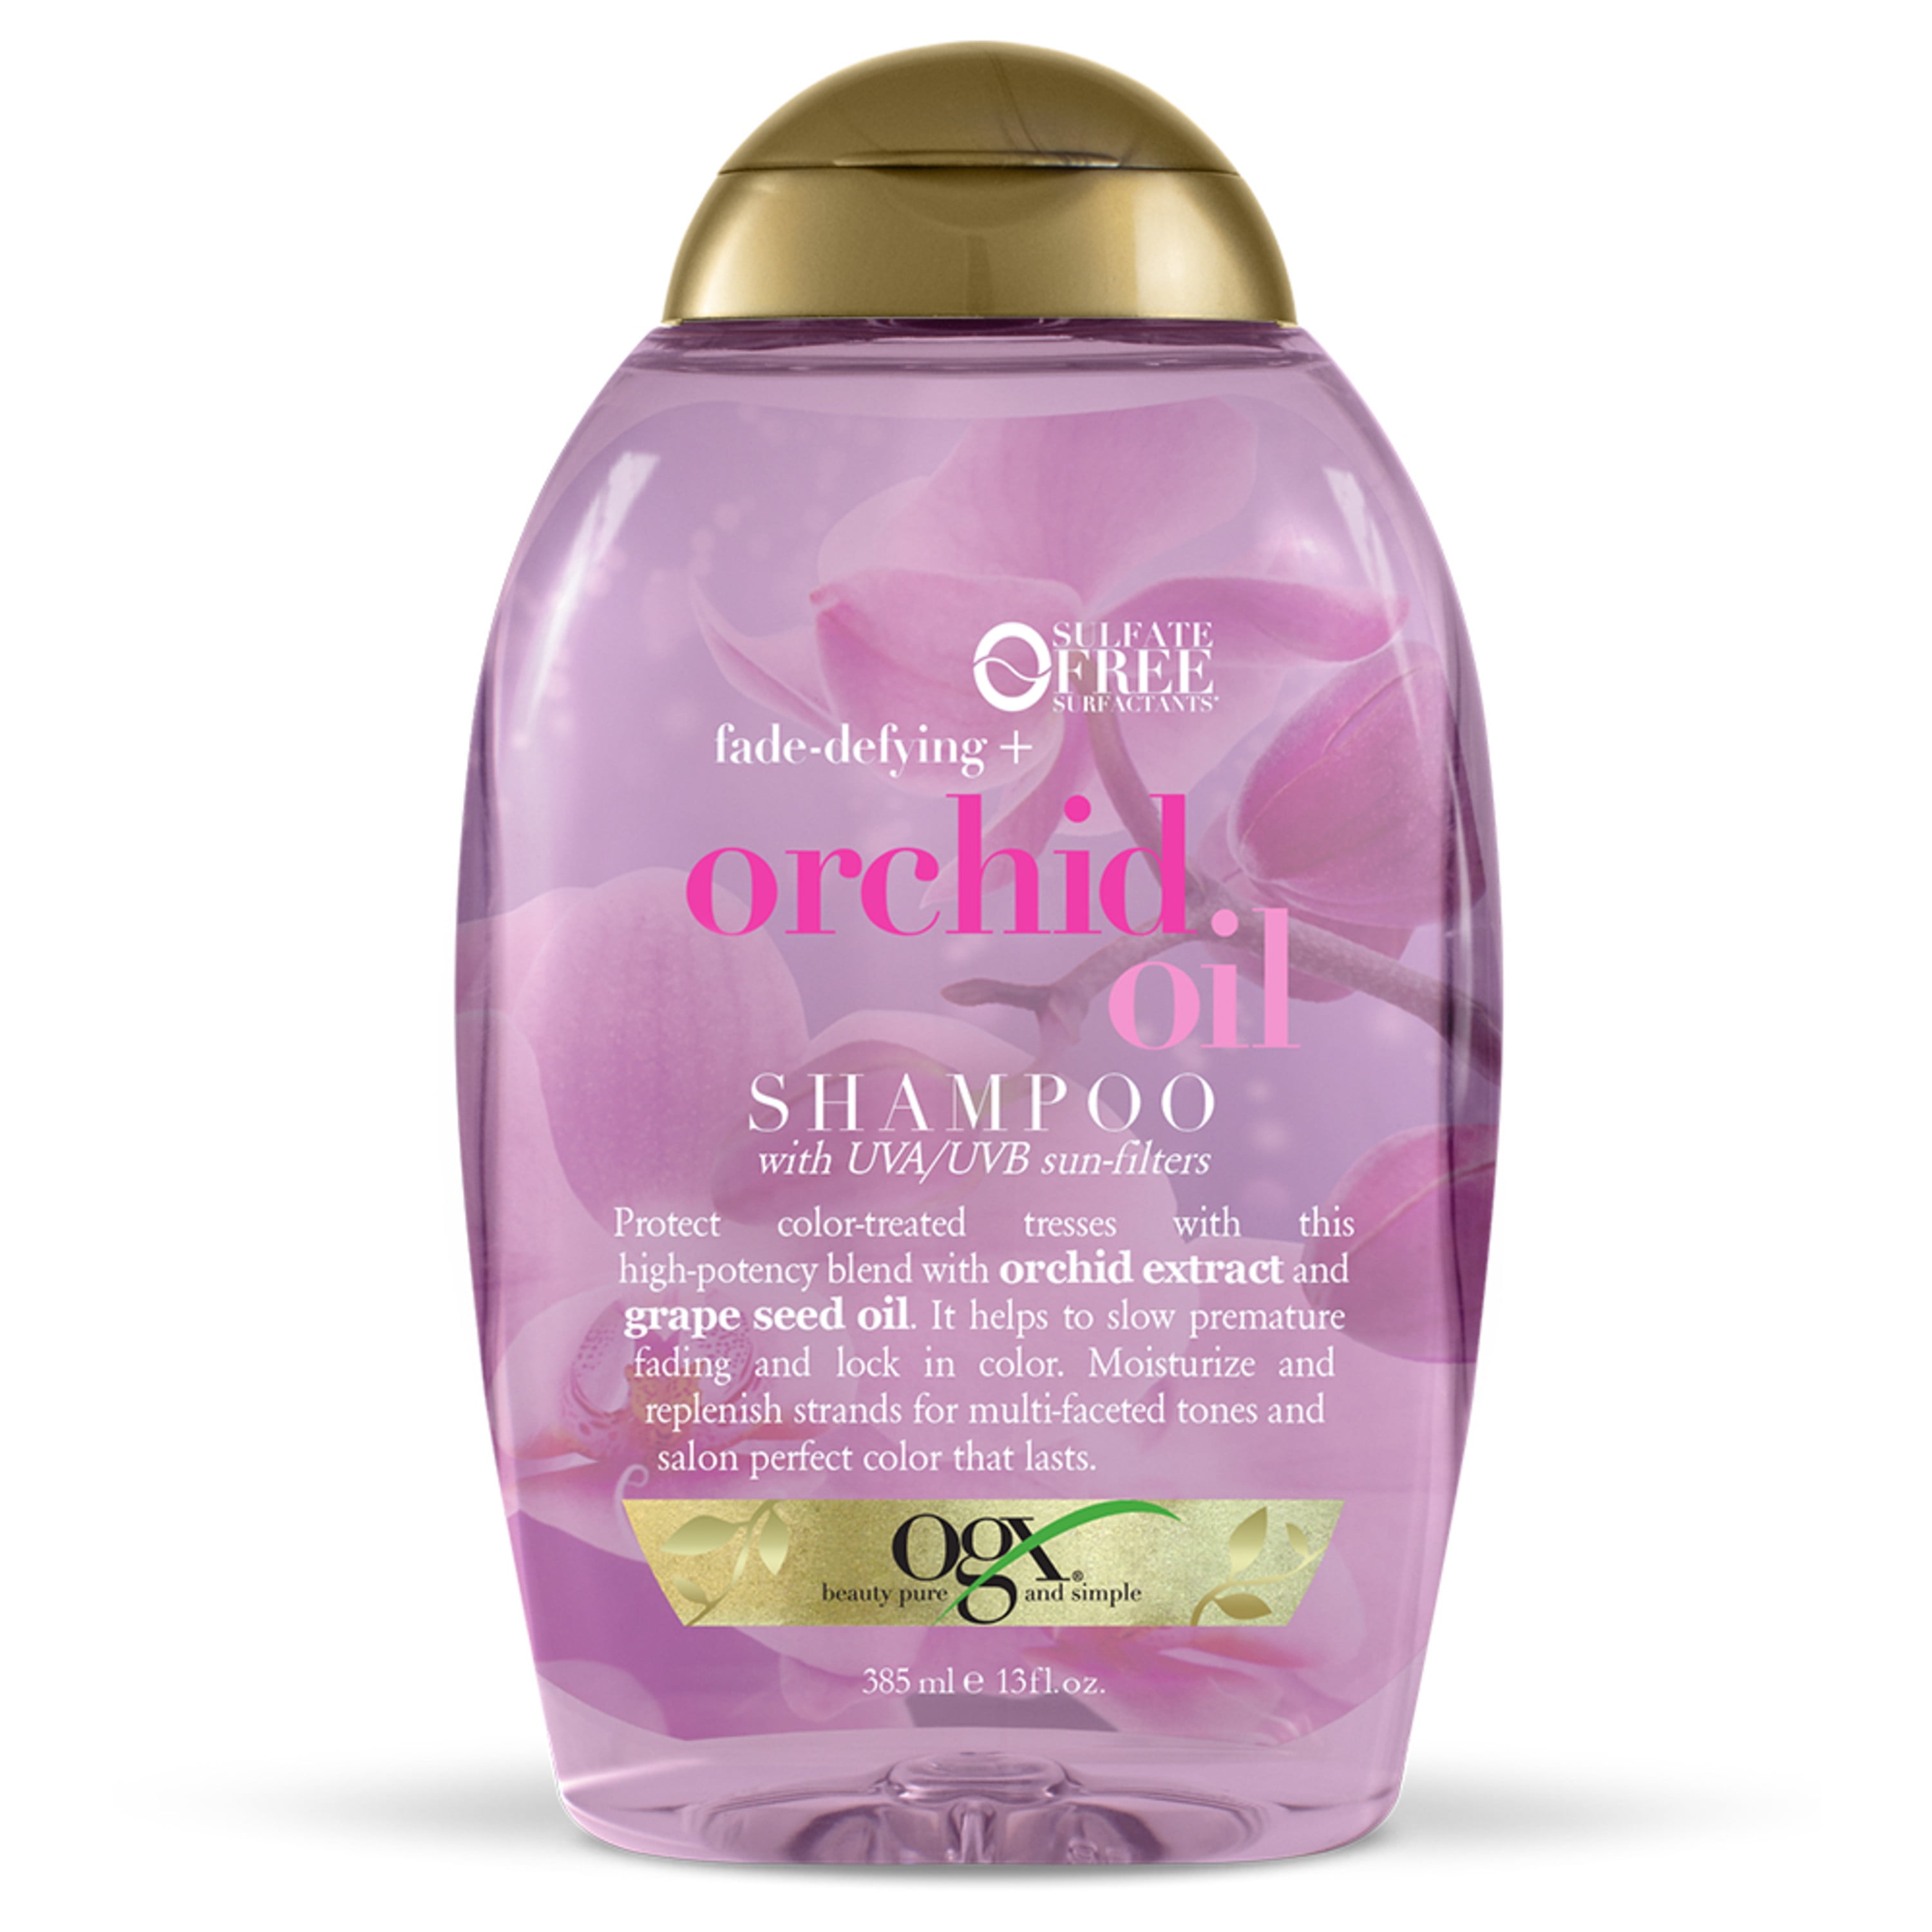 OGX Fade-Defying + Orchid Oil Moisturizing Daily Shampoo, 13 fl oz